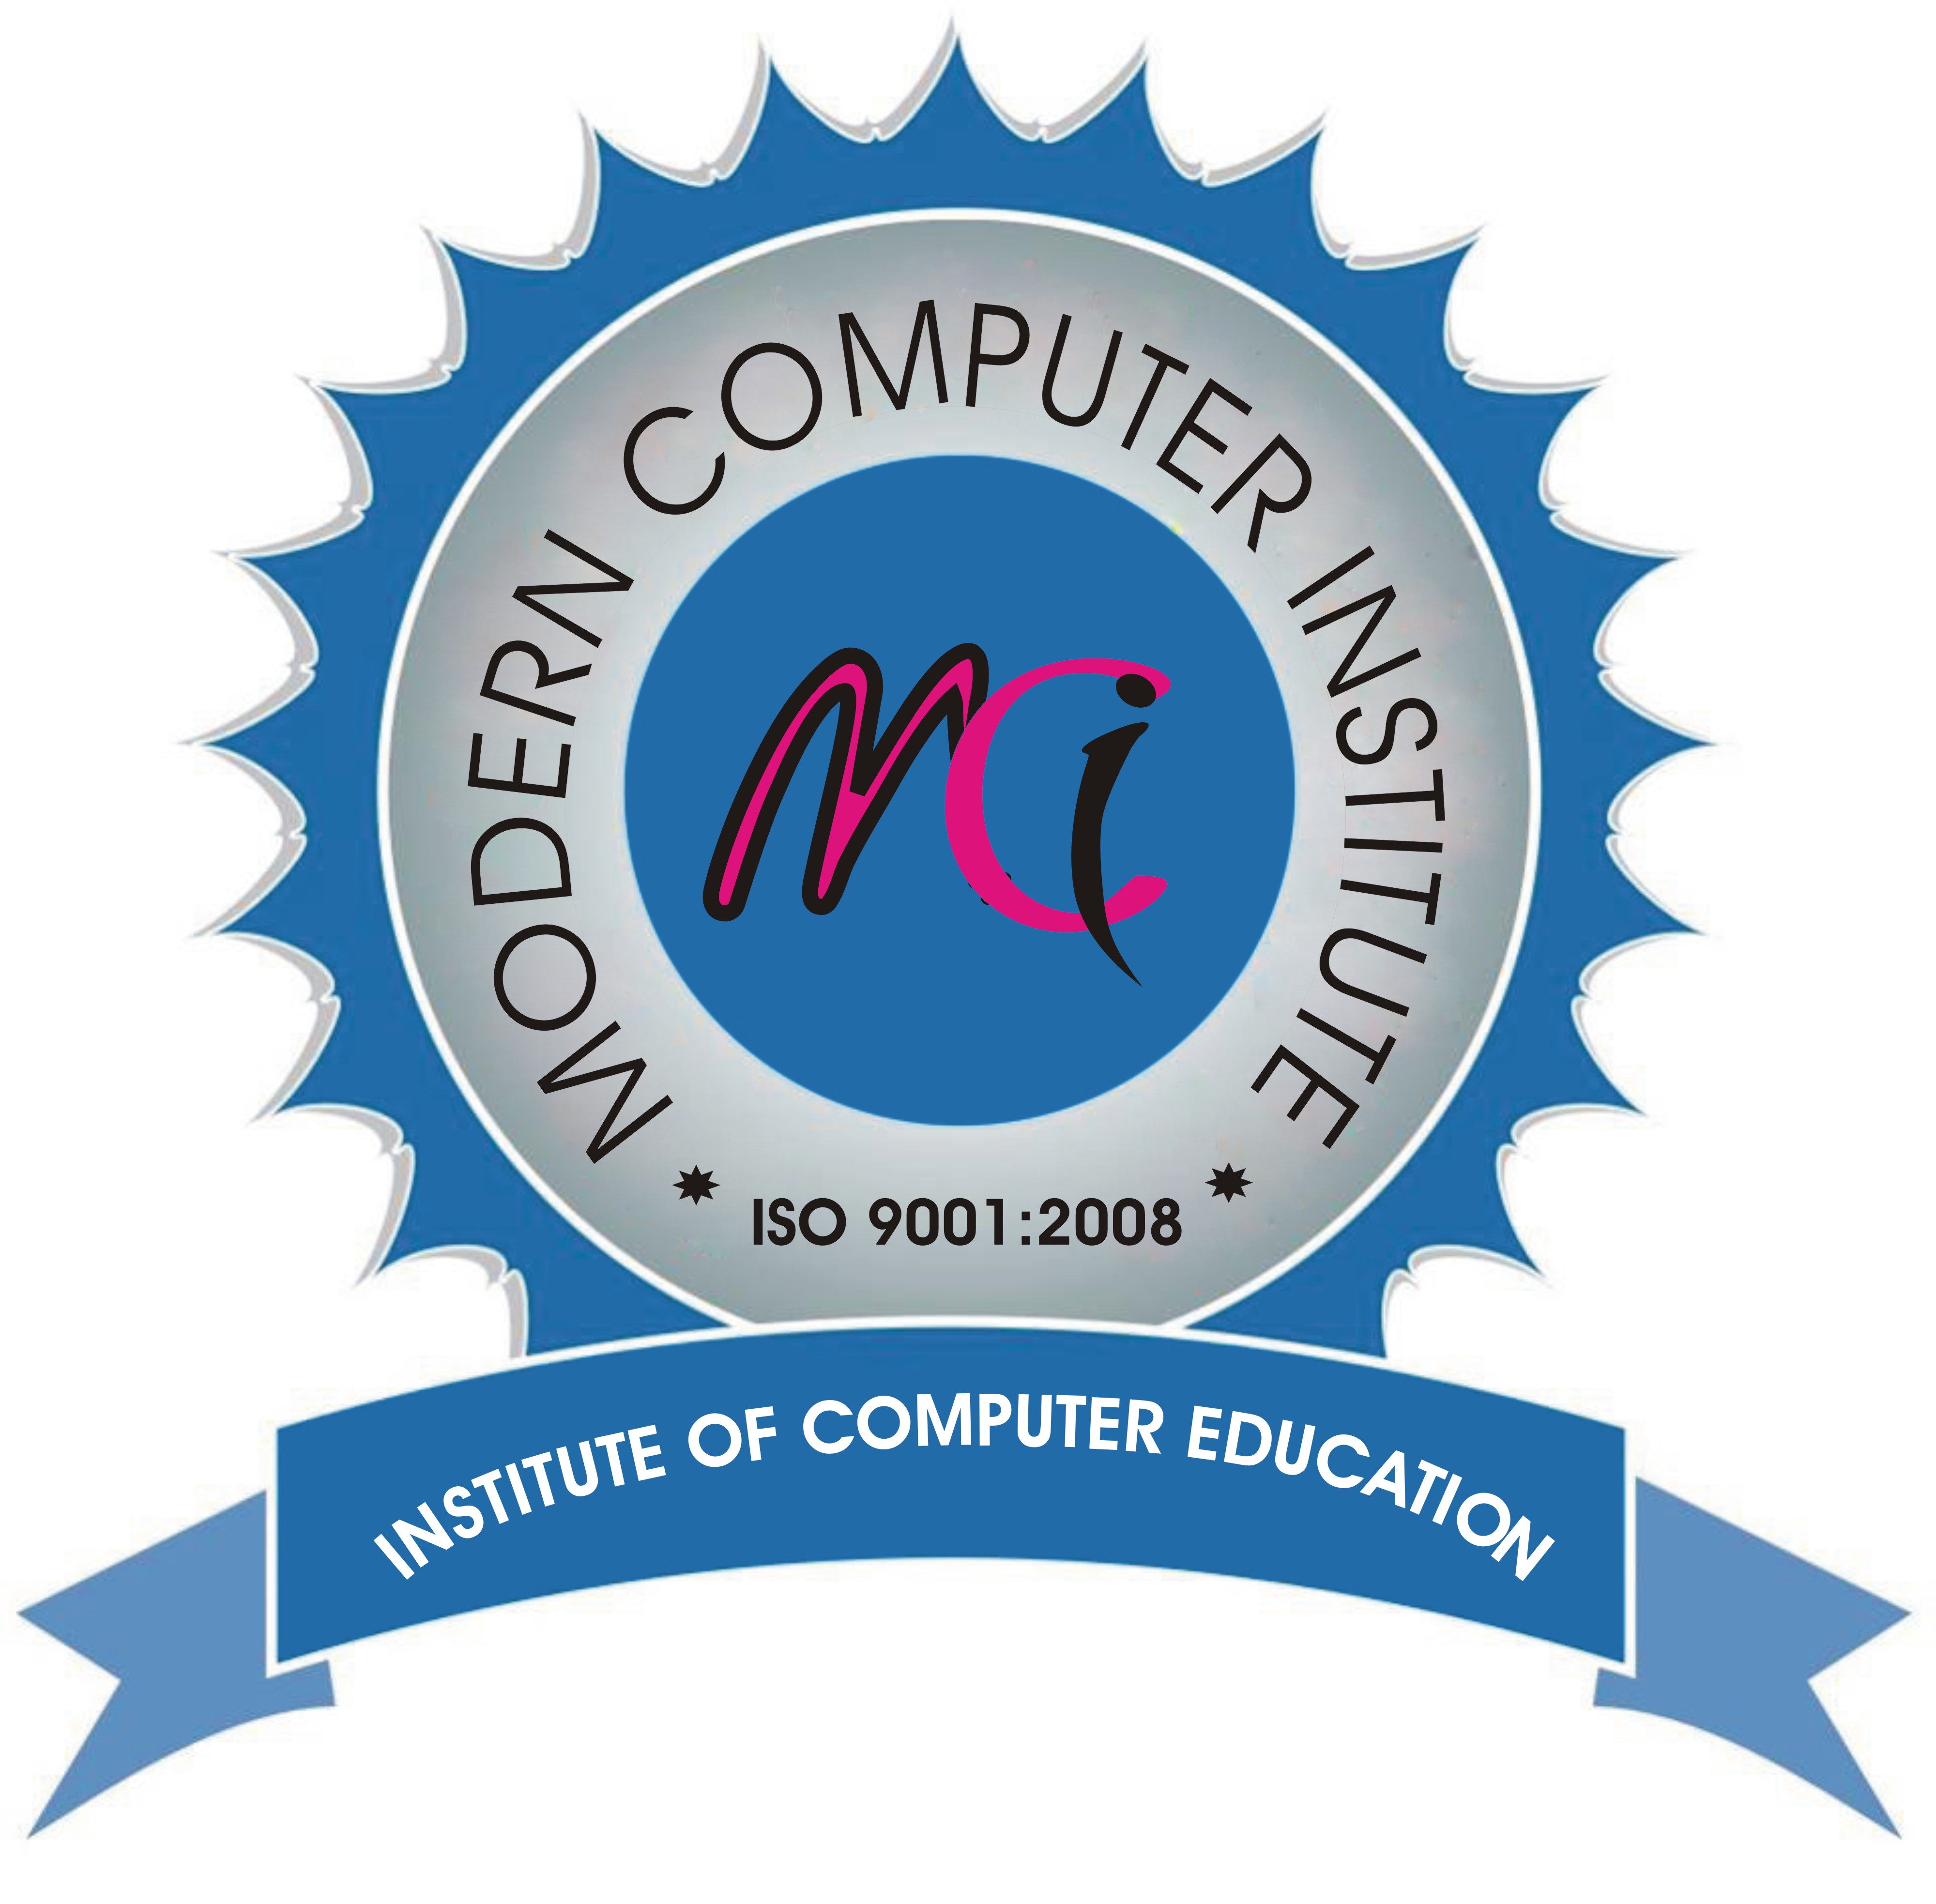 Best Computer / Institution in Bhagalpur Bihar - Top 14 Listing